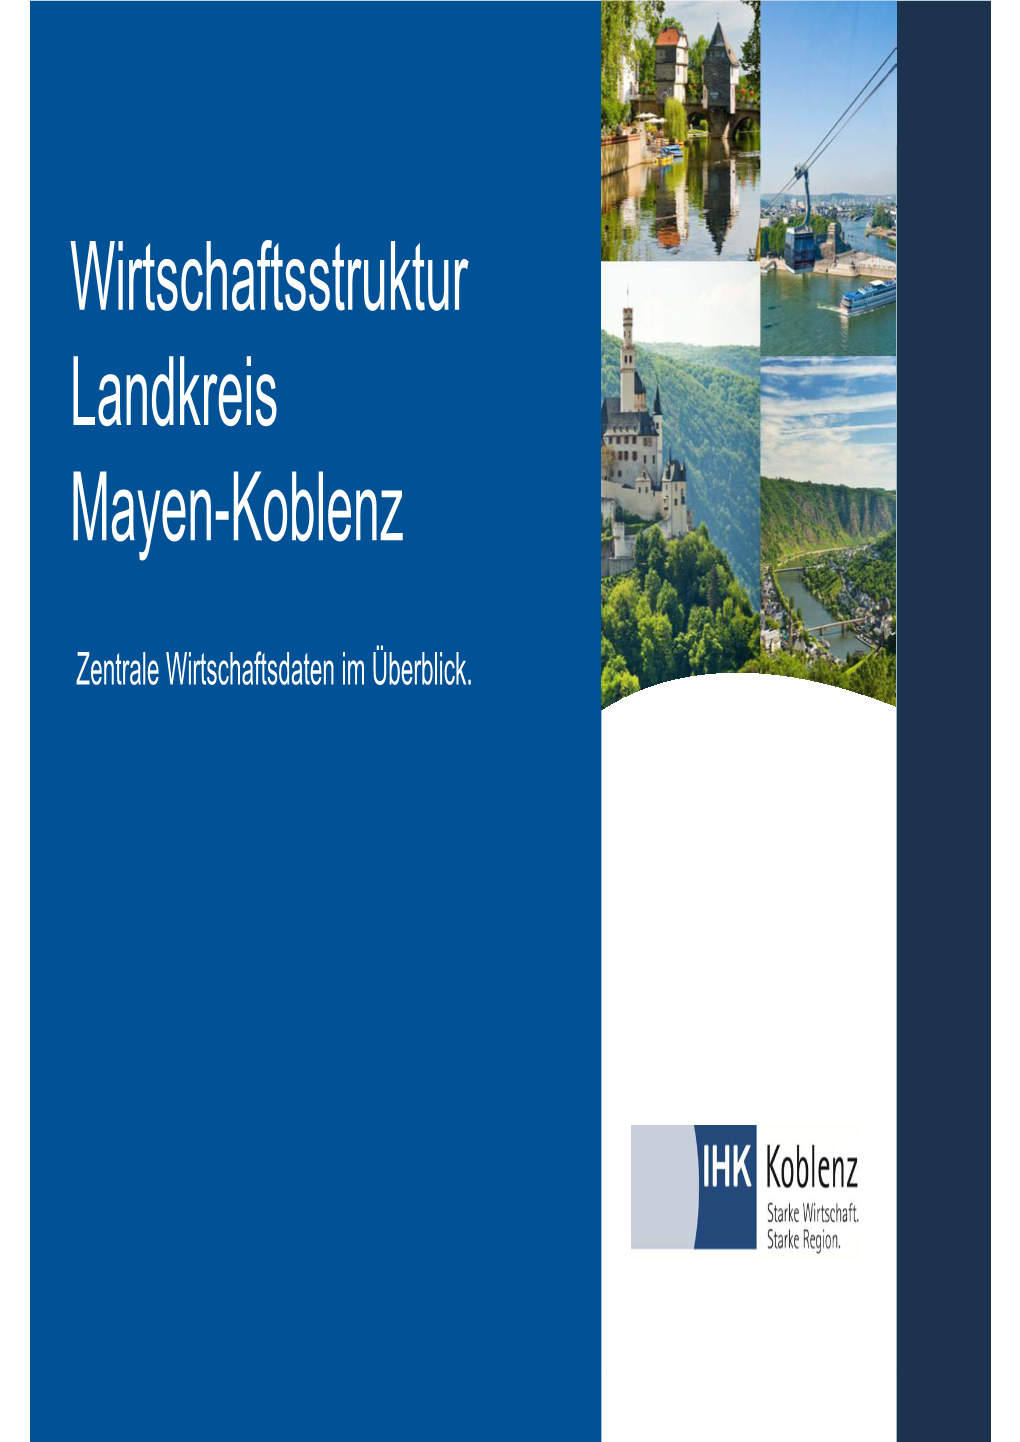 Wirtschaftsstruktur Landkreis Mayen-Koblenz